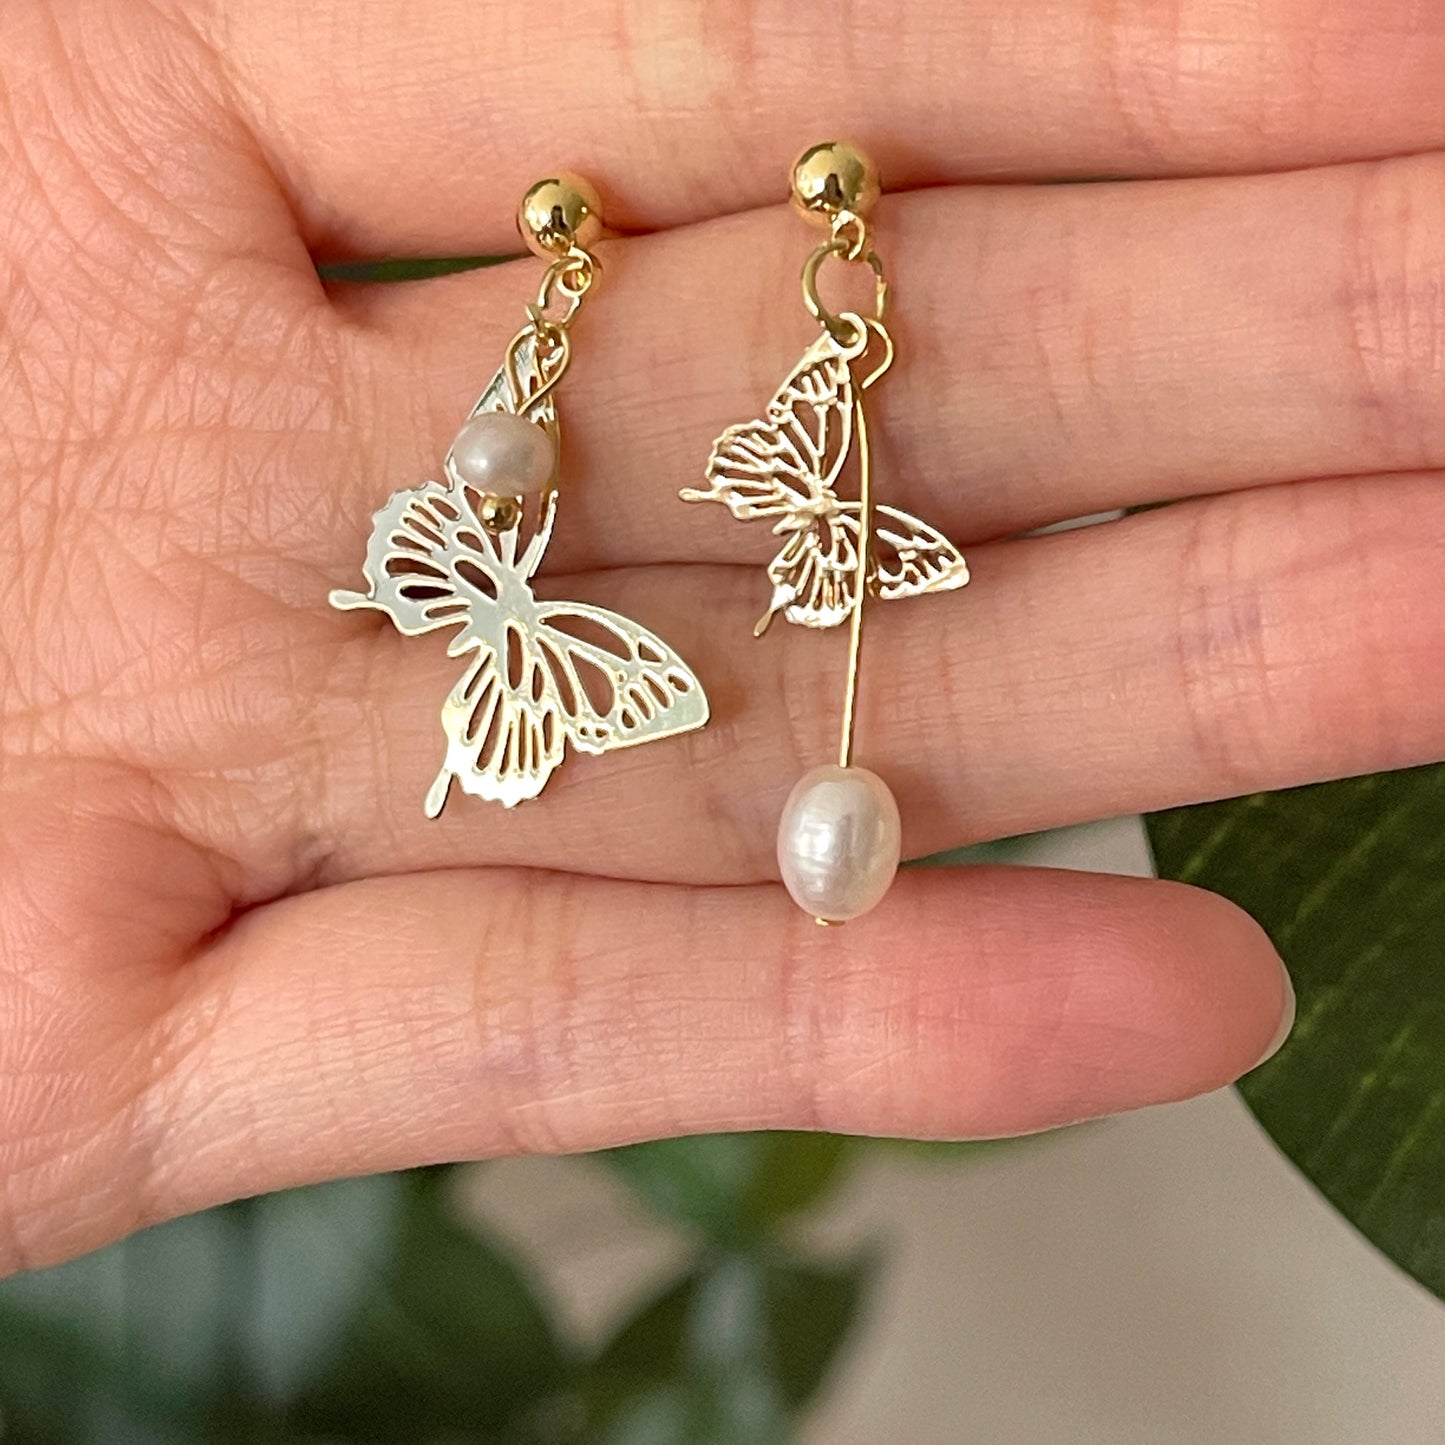 Golden Butterfly Statement Earrings, Natural Pearl Dangle Earrings, Unique Asymmetrical Earrings, Gold Lace Earrings, Dainty Handmade Gift